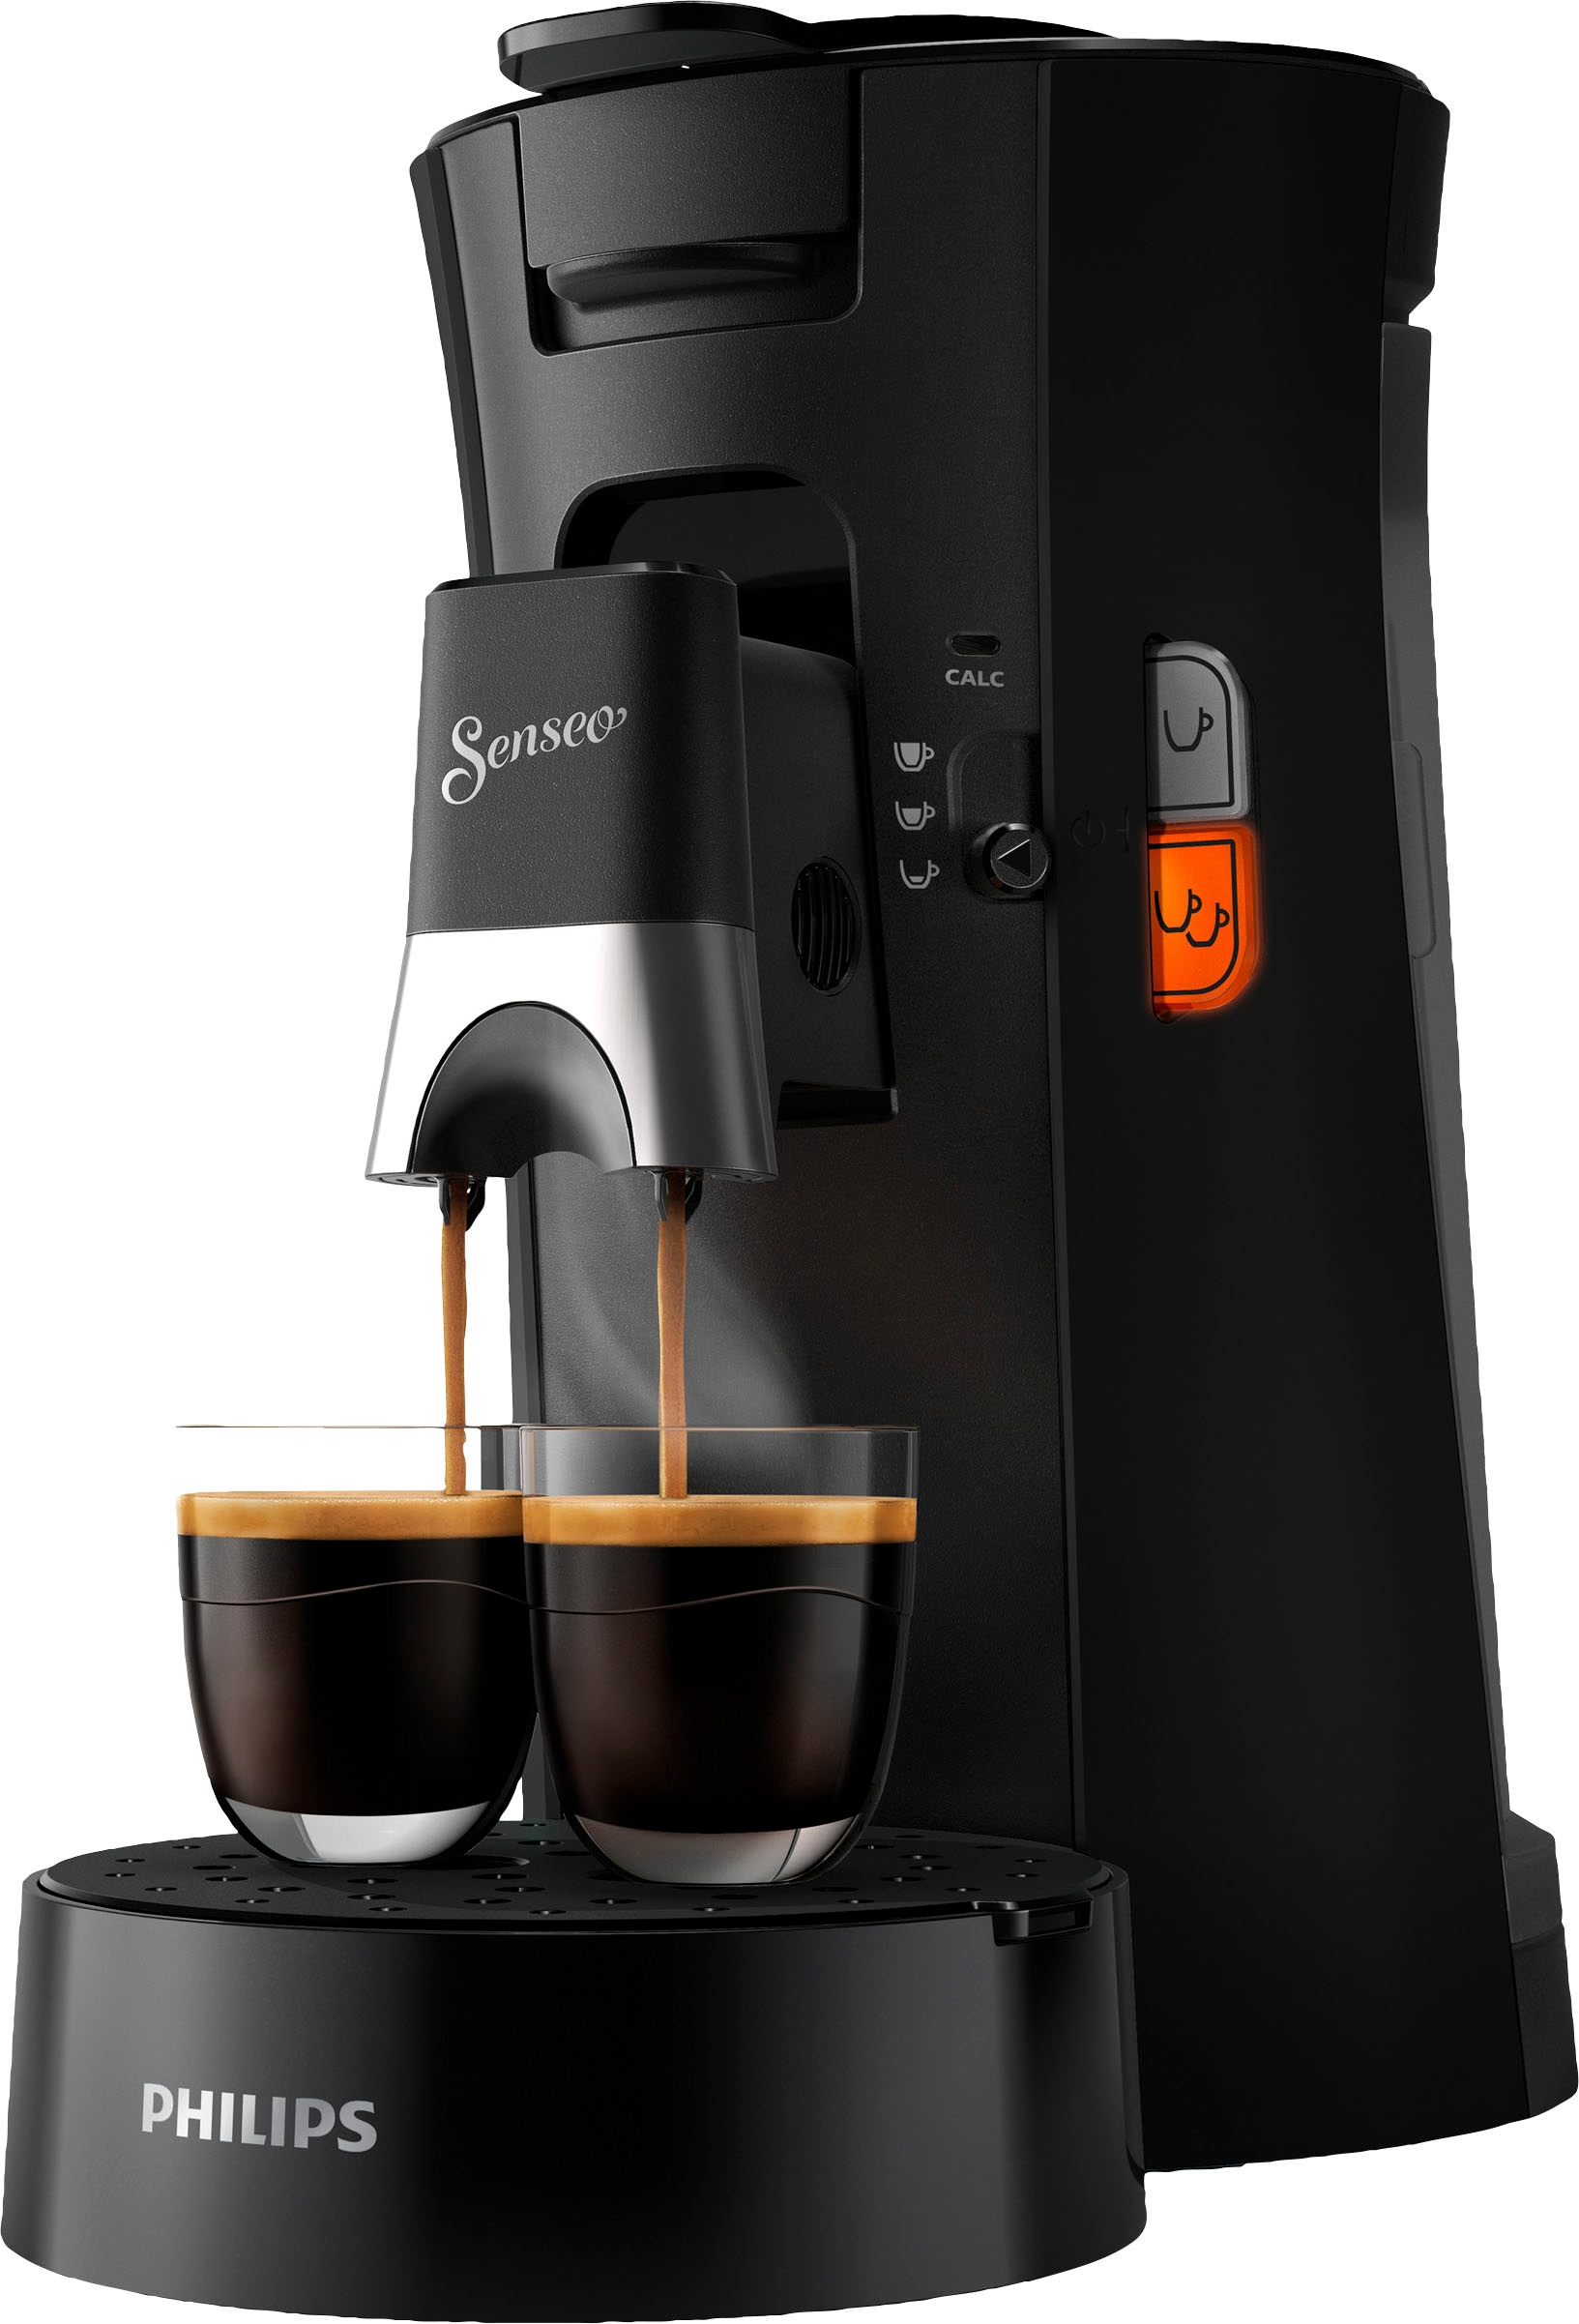 Philips Senseo Kaffeepadmaschine »Select CSA230/69, aus 21% recyceltem  Plastik«, Crema Plus, 100 Senseo Pads kaufen und bis zu 33 € zurückerhalten  | BAUR